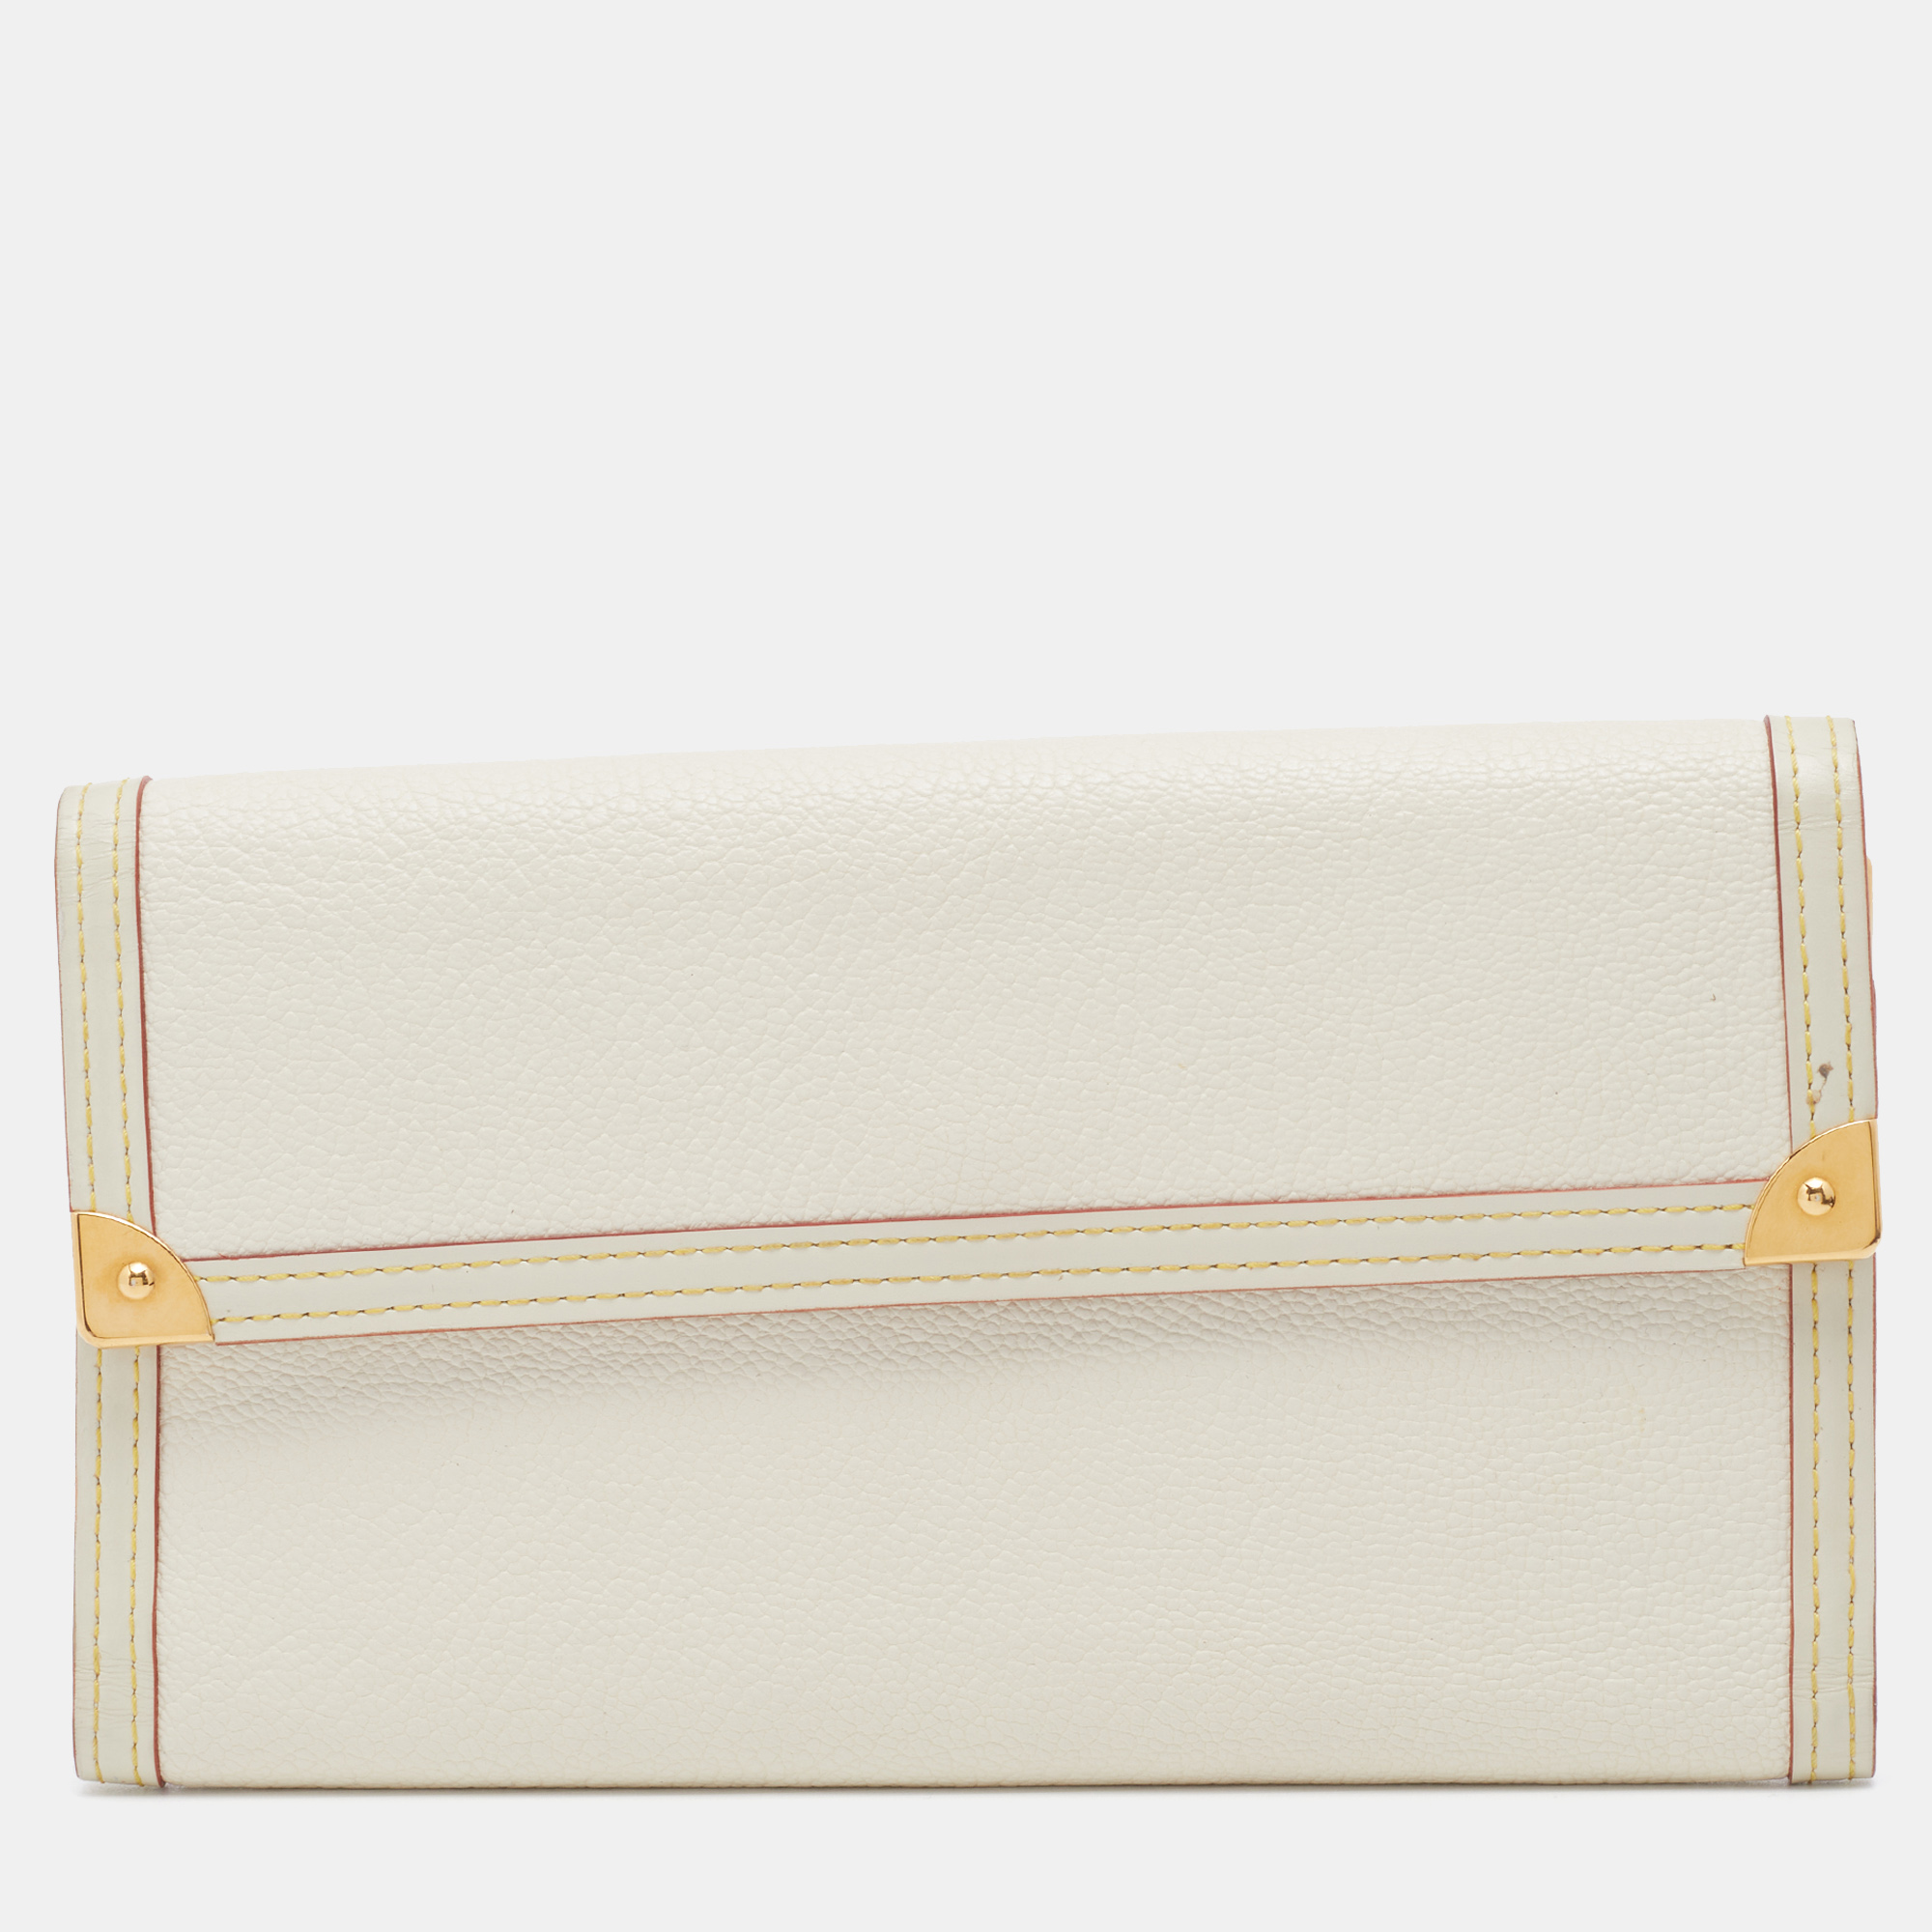 Louis vuitton white leather porte tresor international trifold wallet